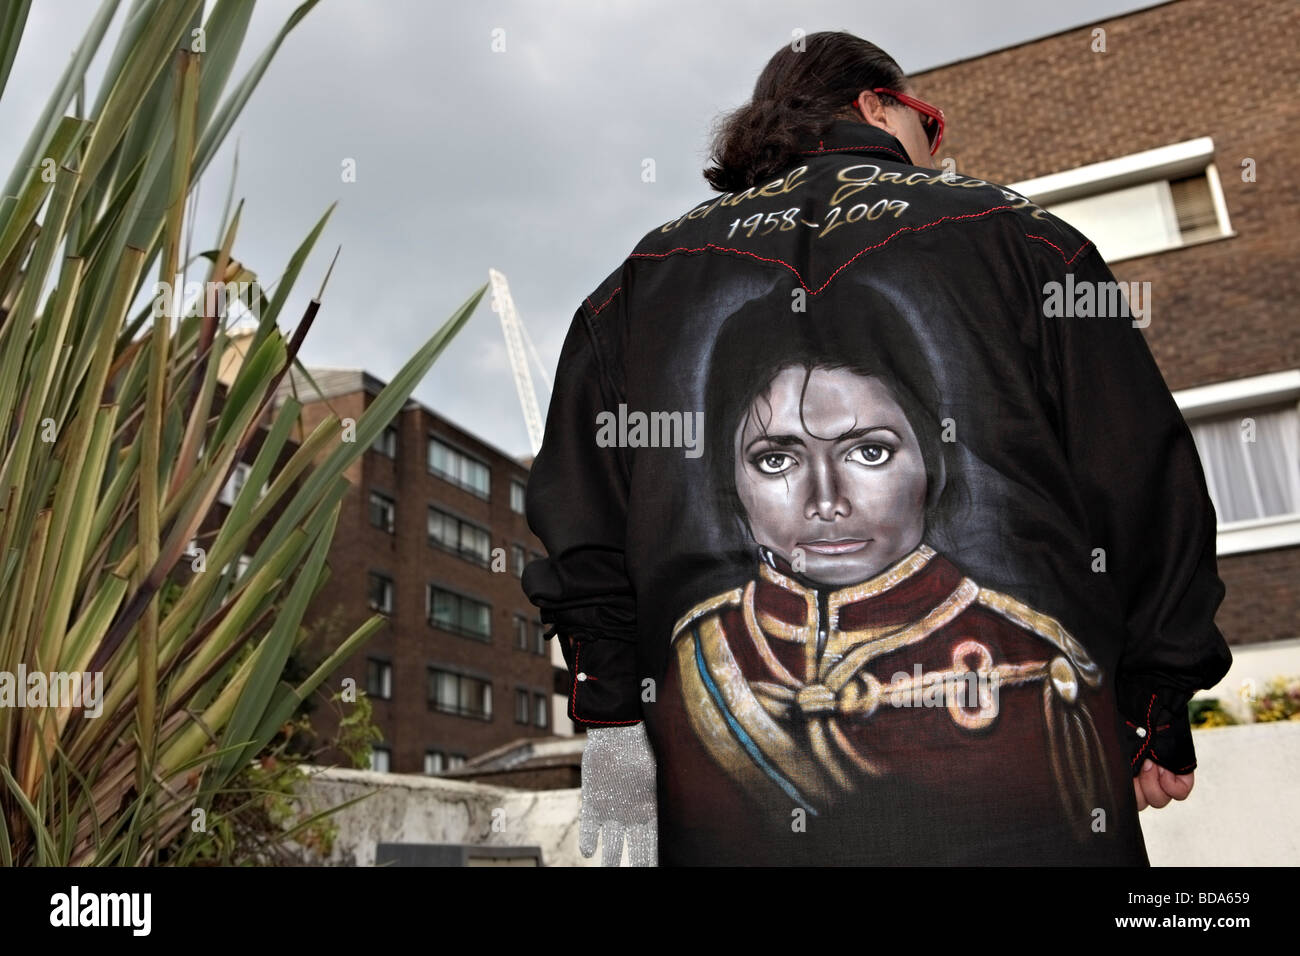 Michael Jackson's fan avec chemise noire sur mesure à Londres West End. Banque D'Images